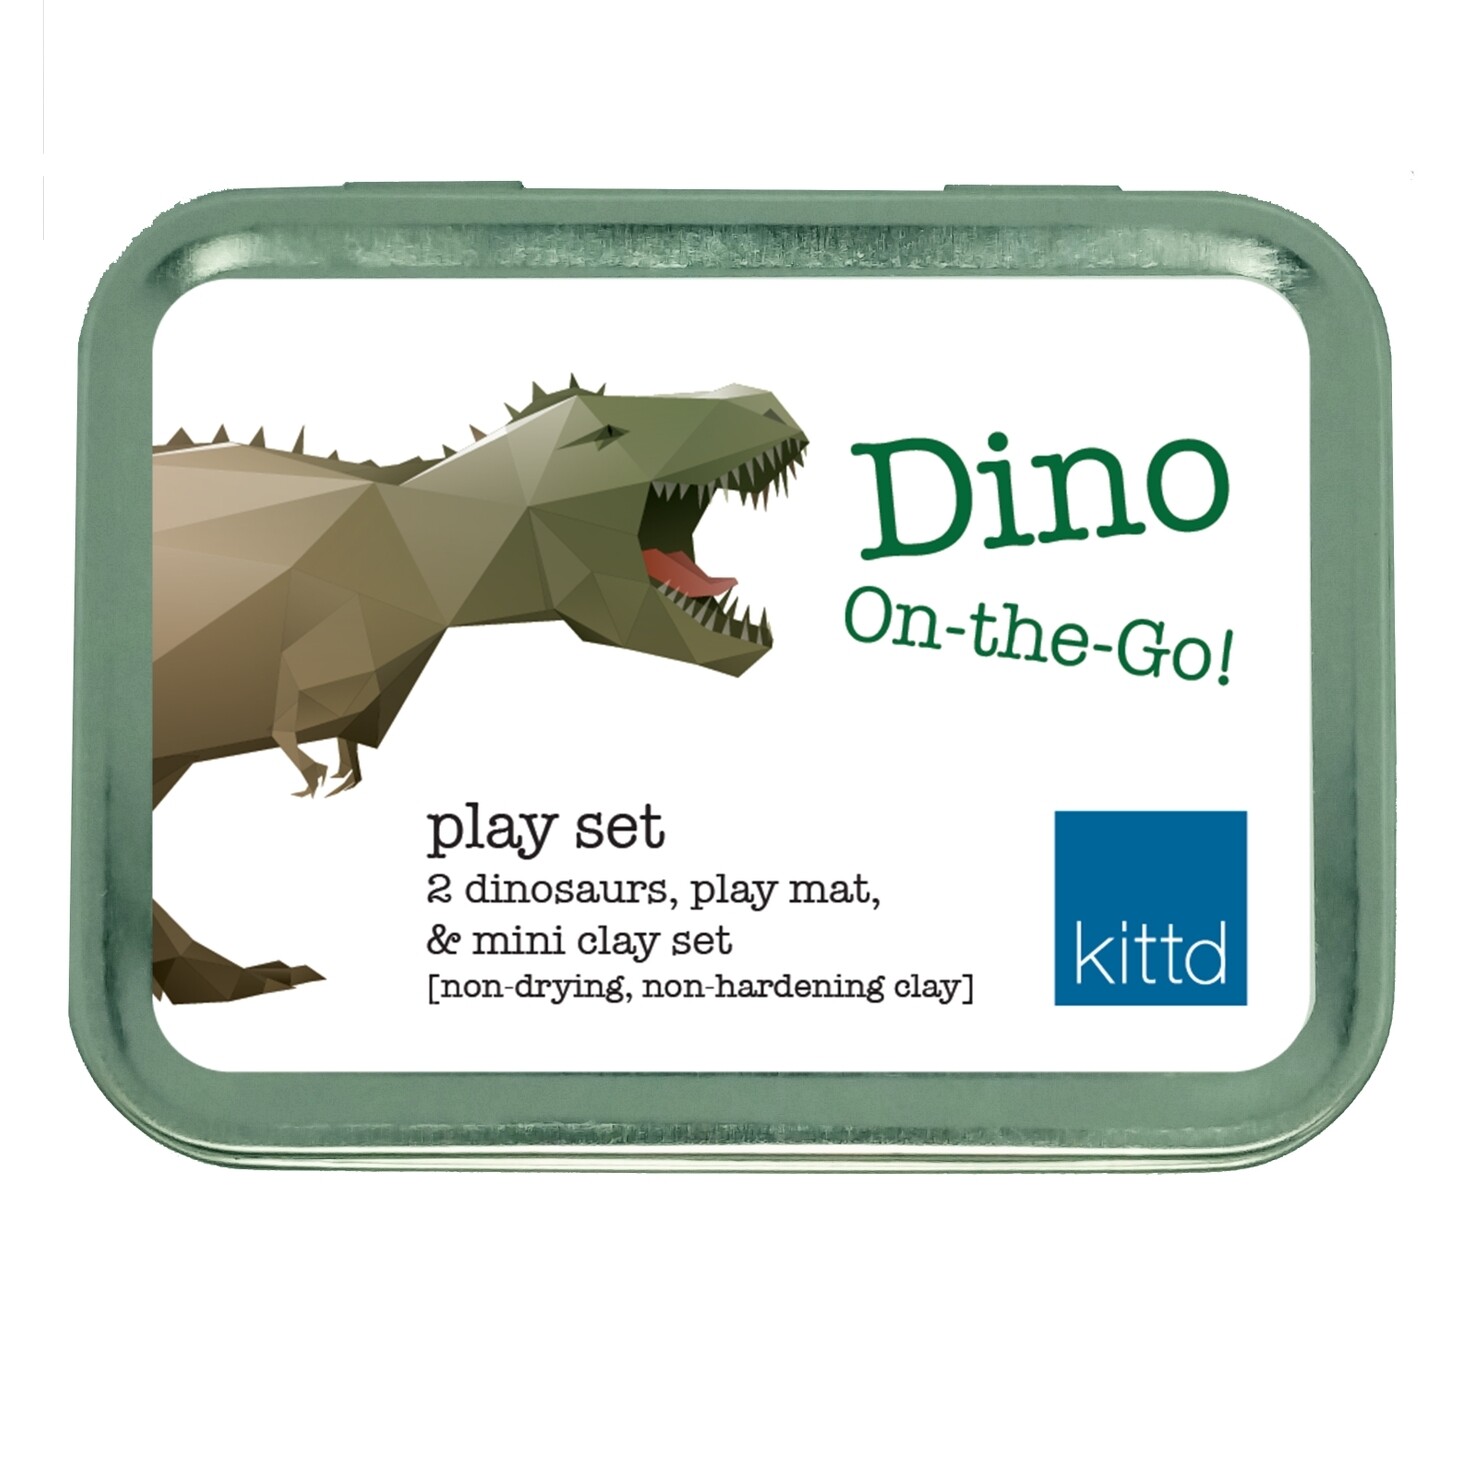 Dino On-the-Go